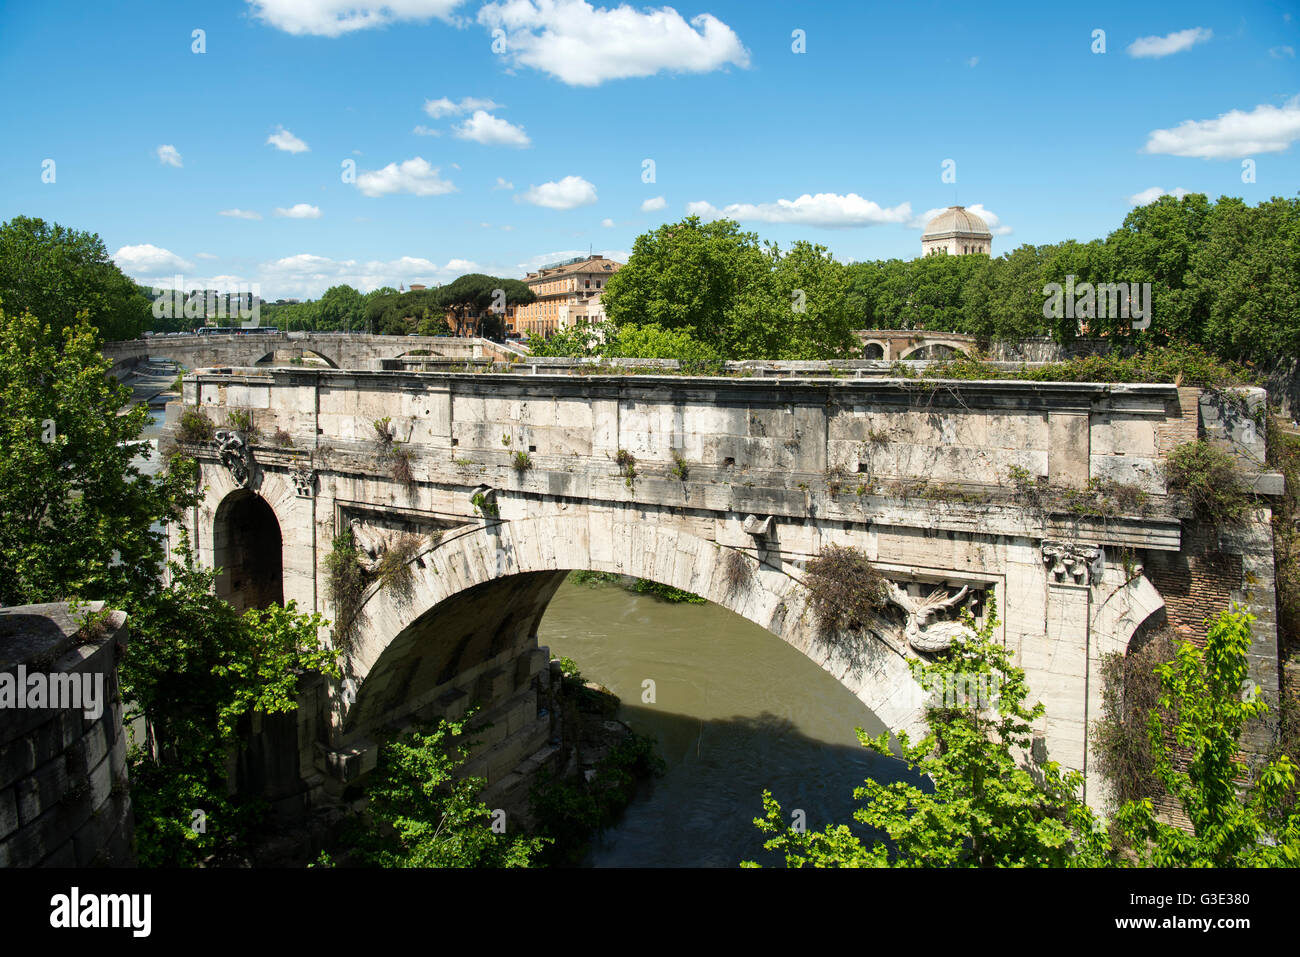 Italien, Rom, Pons Aemilius (ponte Emilio, Ponte Rotto) nördlich der Ponte Palatino ist die älteste bekannte Steinbrücke nella ROM Foto Stock